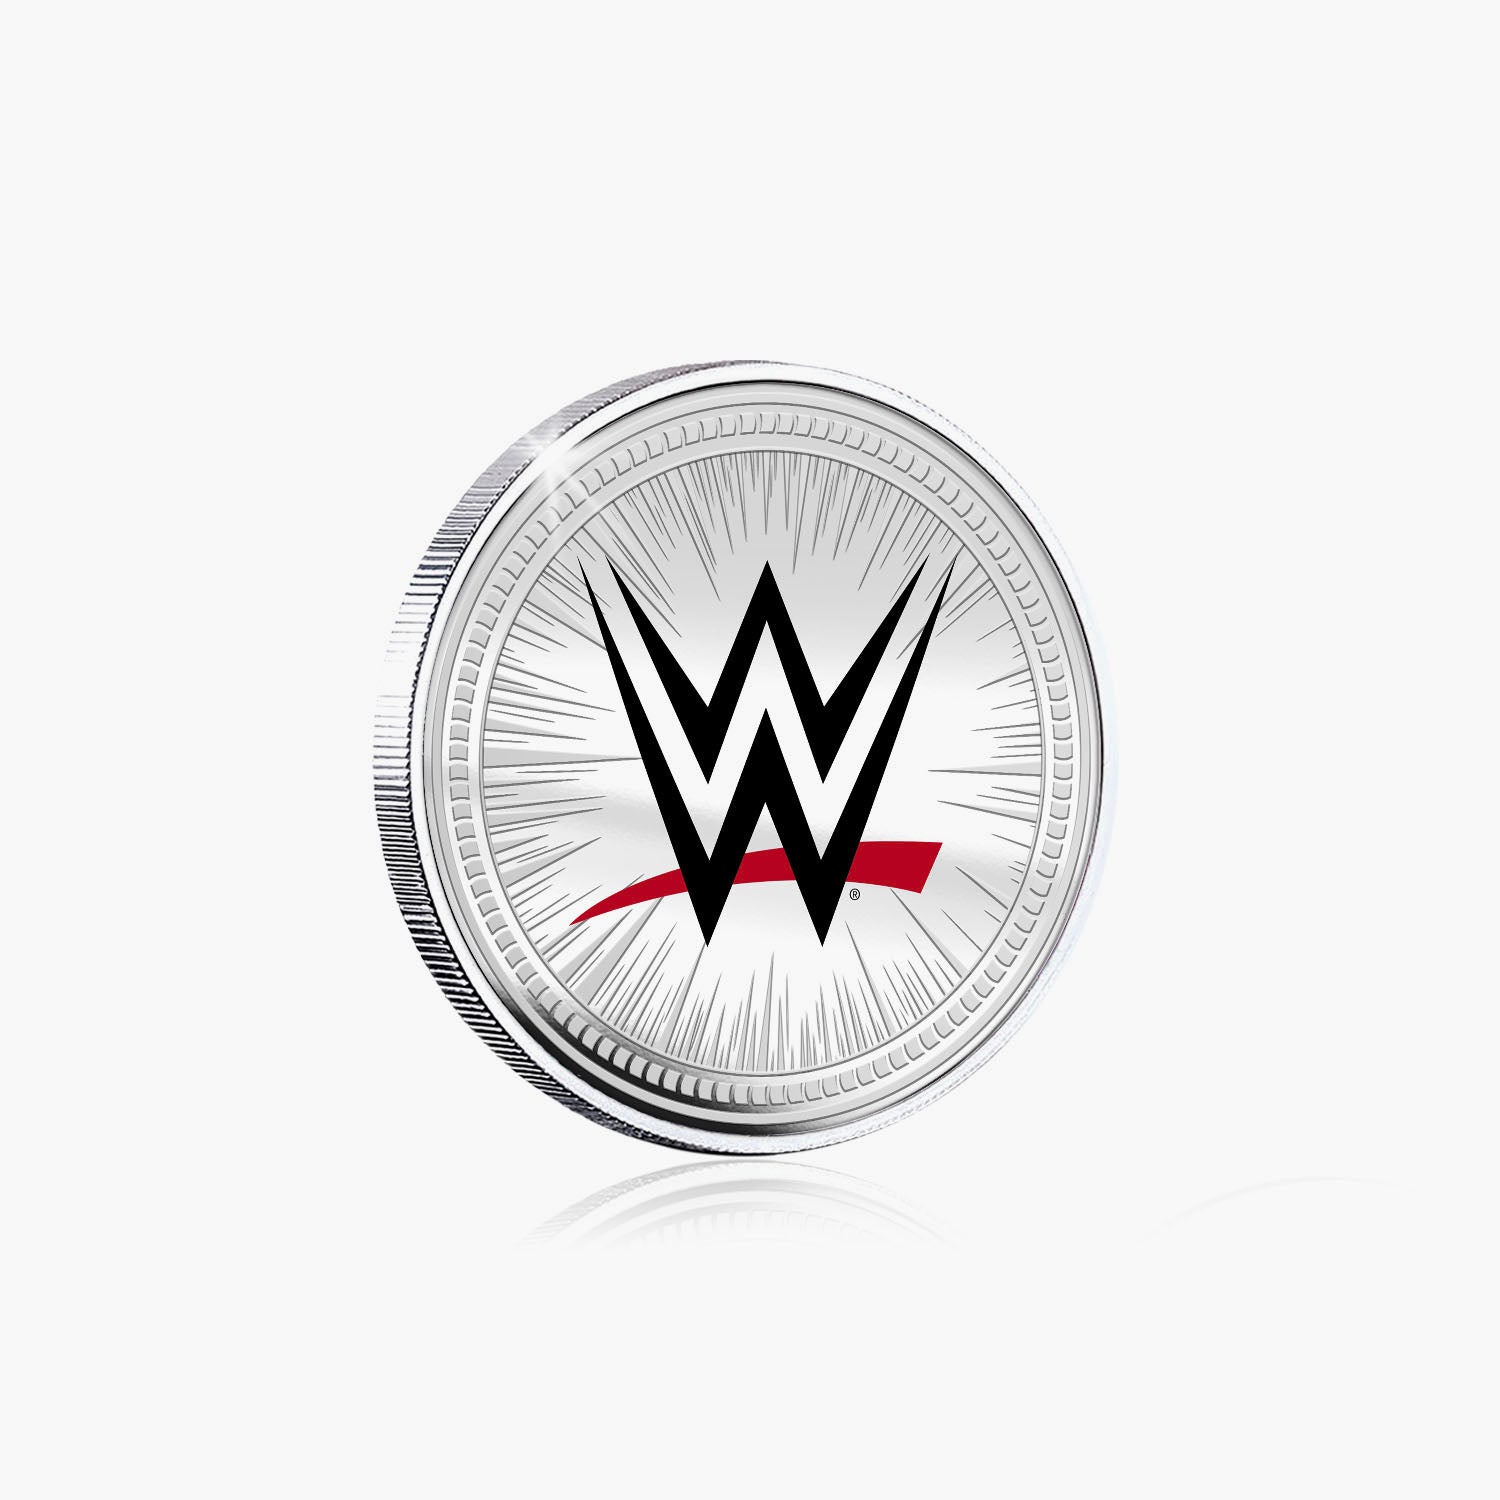 Collection commémorative WWE - Triple H - Commémorative plaquée argent 32 mm